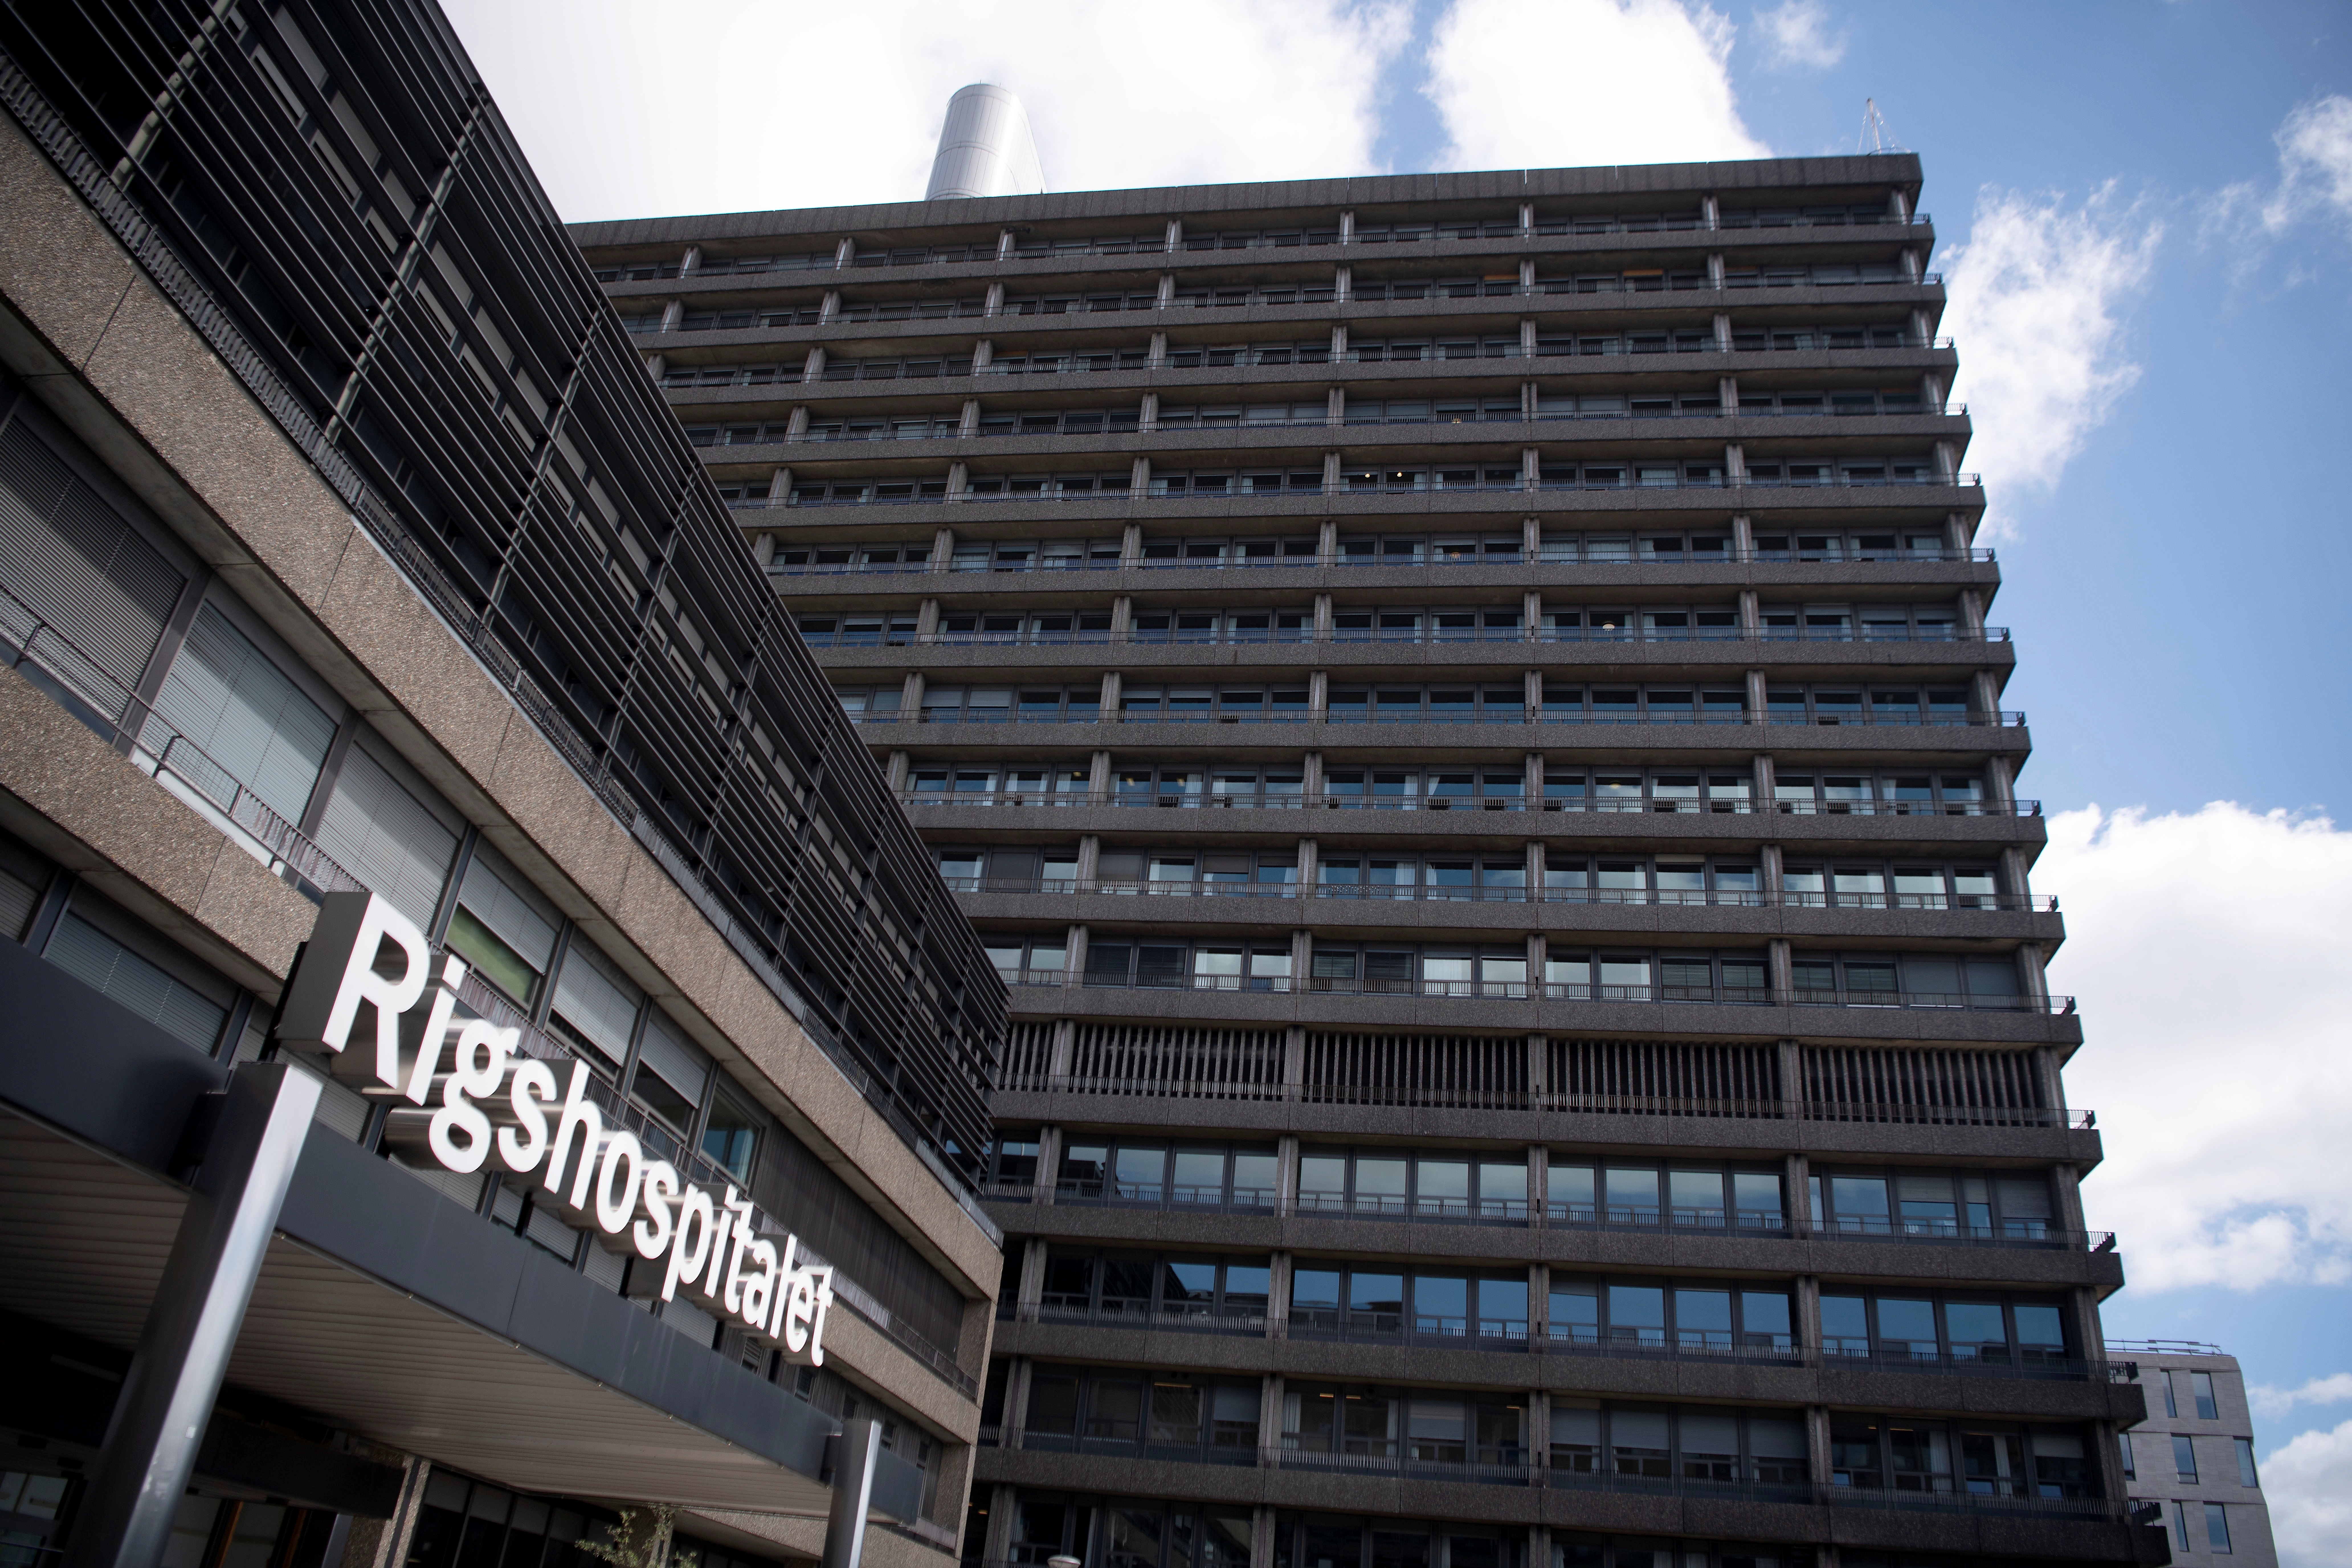 Imagen del hospital en el que permanece ingresado el futbolista danés Christian Eriksen. (Efe)
